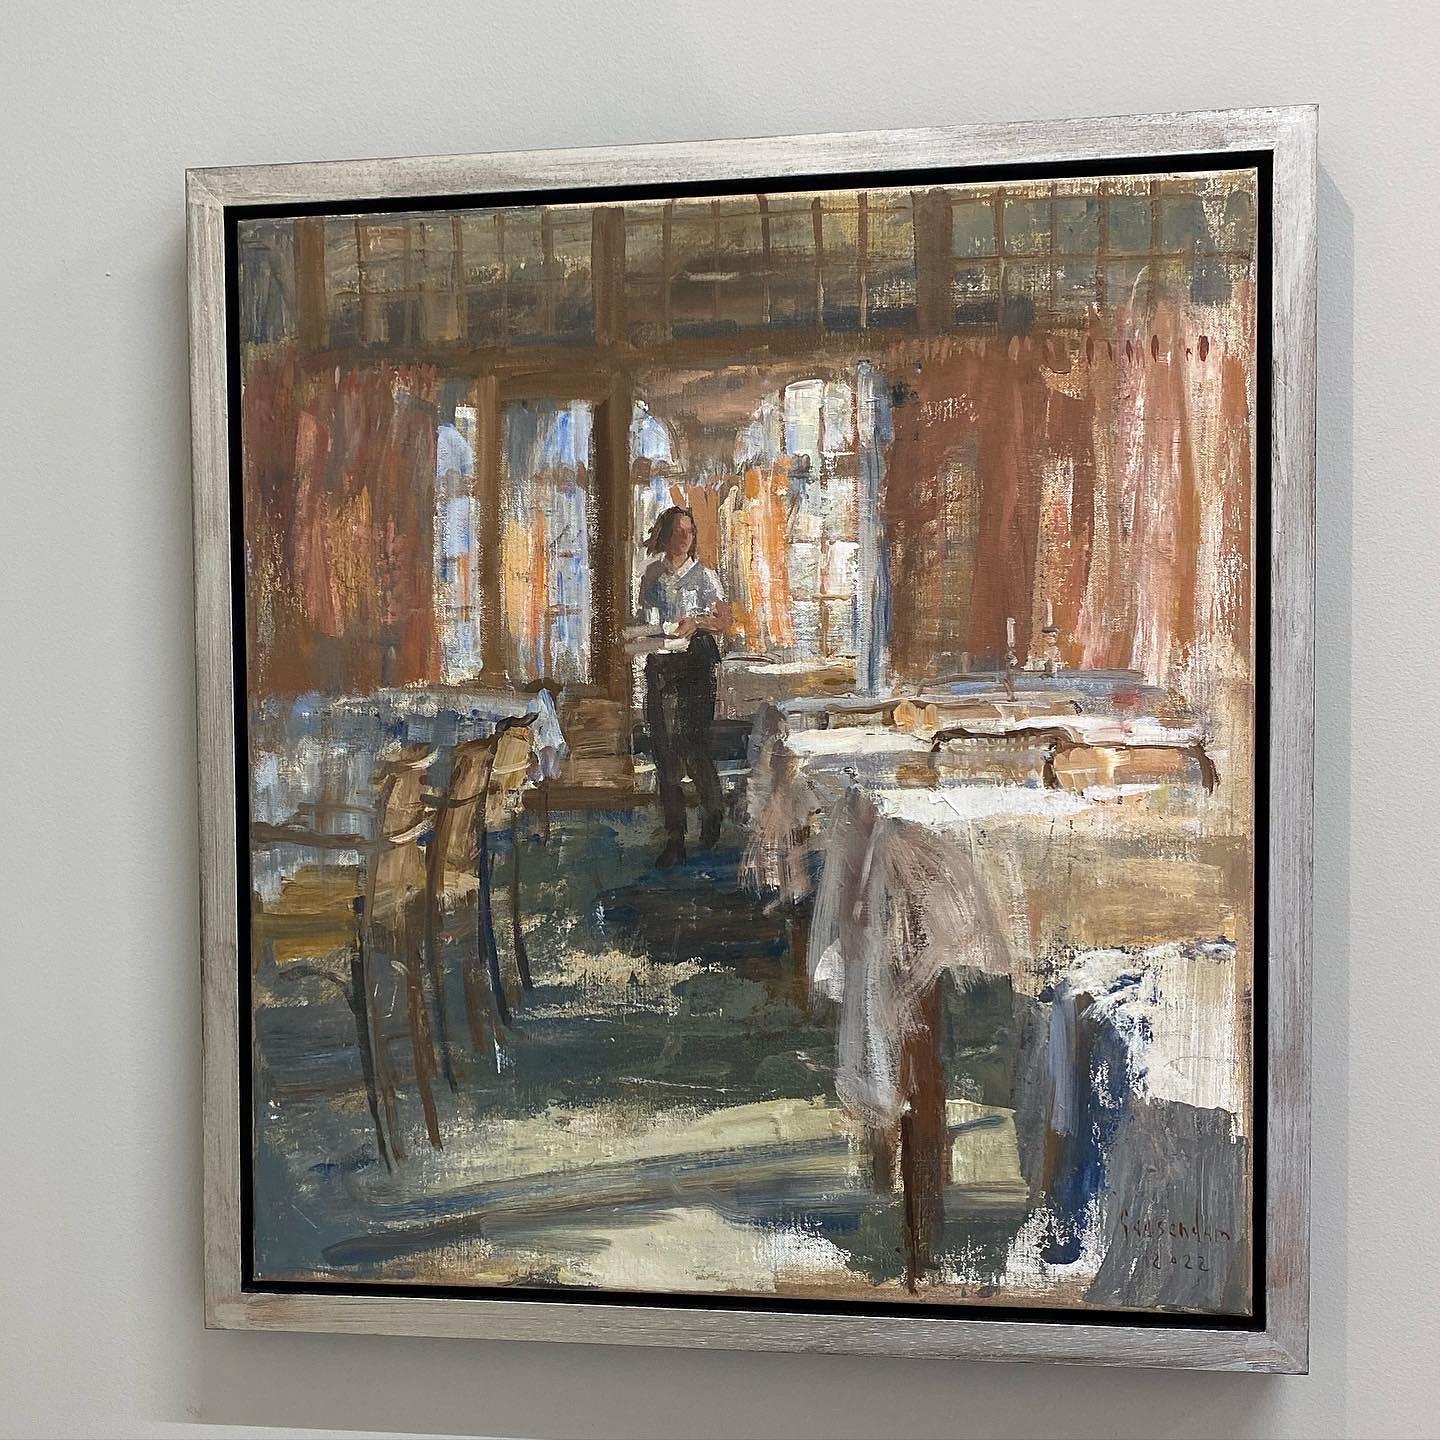 Le service, peinture contemporaine du 21e siècle d'un  serveur dans un restaurant - Marron Figurative Painting par Flip Gaasendam